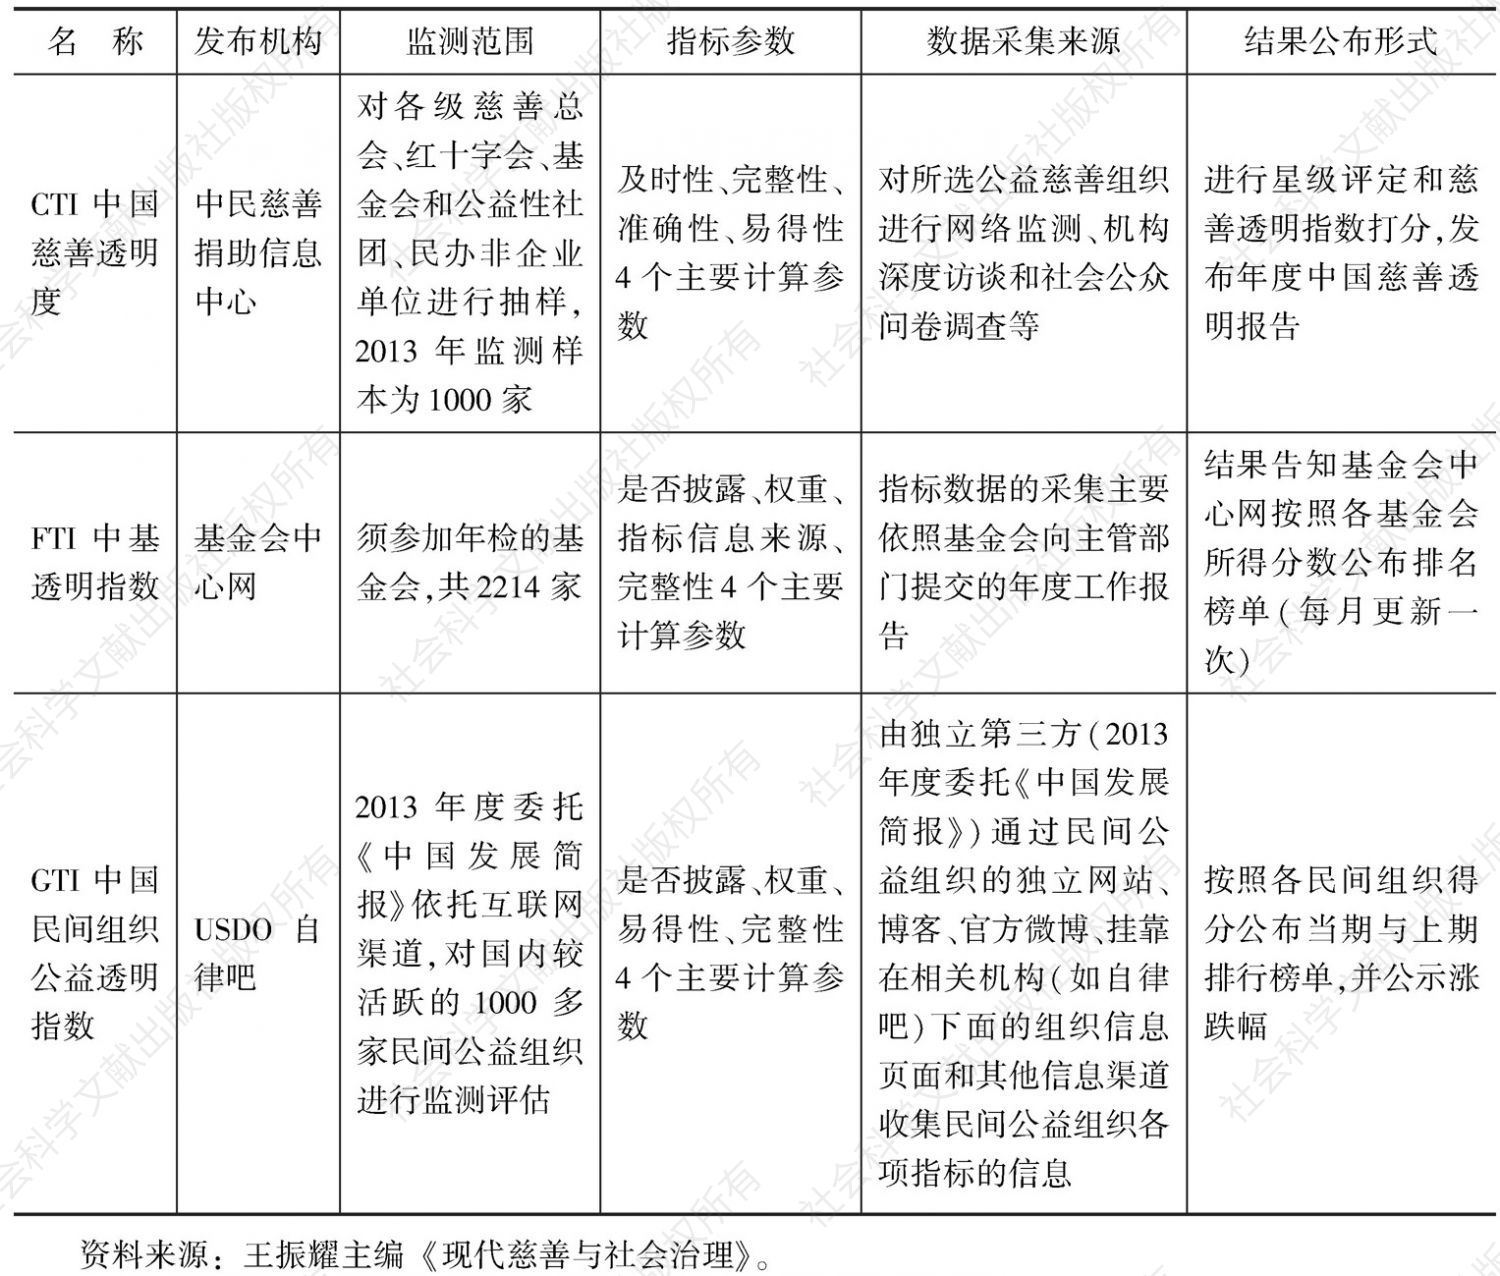 表4-6 中国（不含港澳台）慈善透明评估指数信息